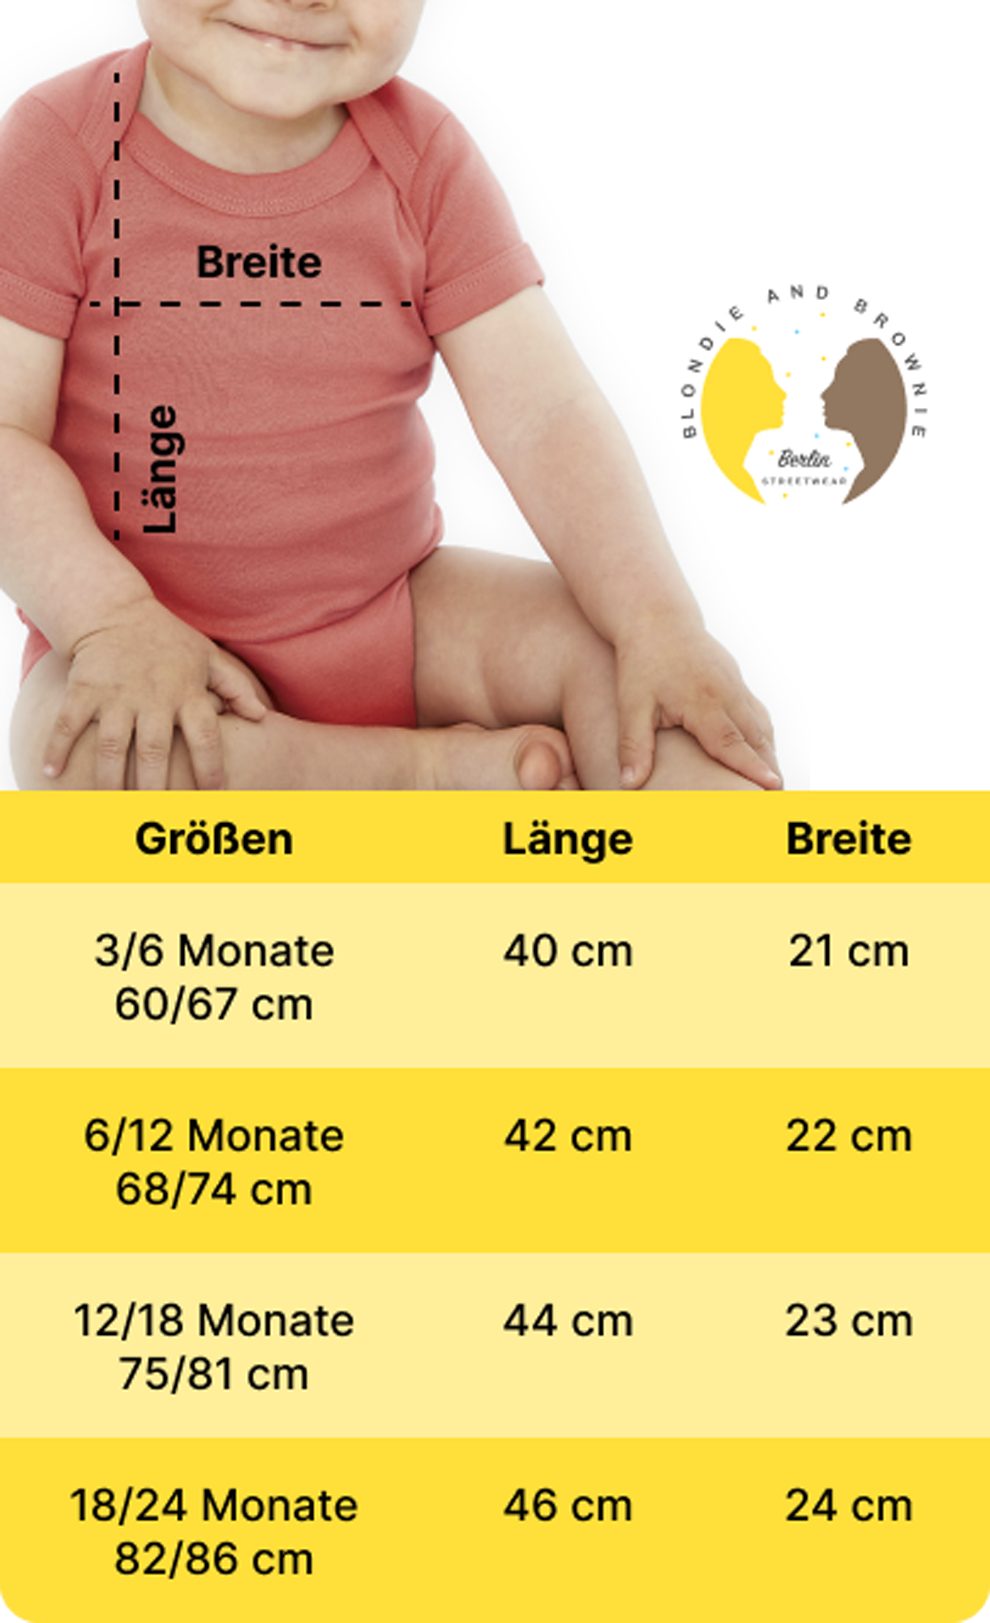 Deutschland Trikot Strampler Body EM Germany Brownie Meister & Kinder Fussball Blondie Schwarz/Weiss Sport Baby